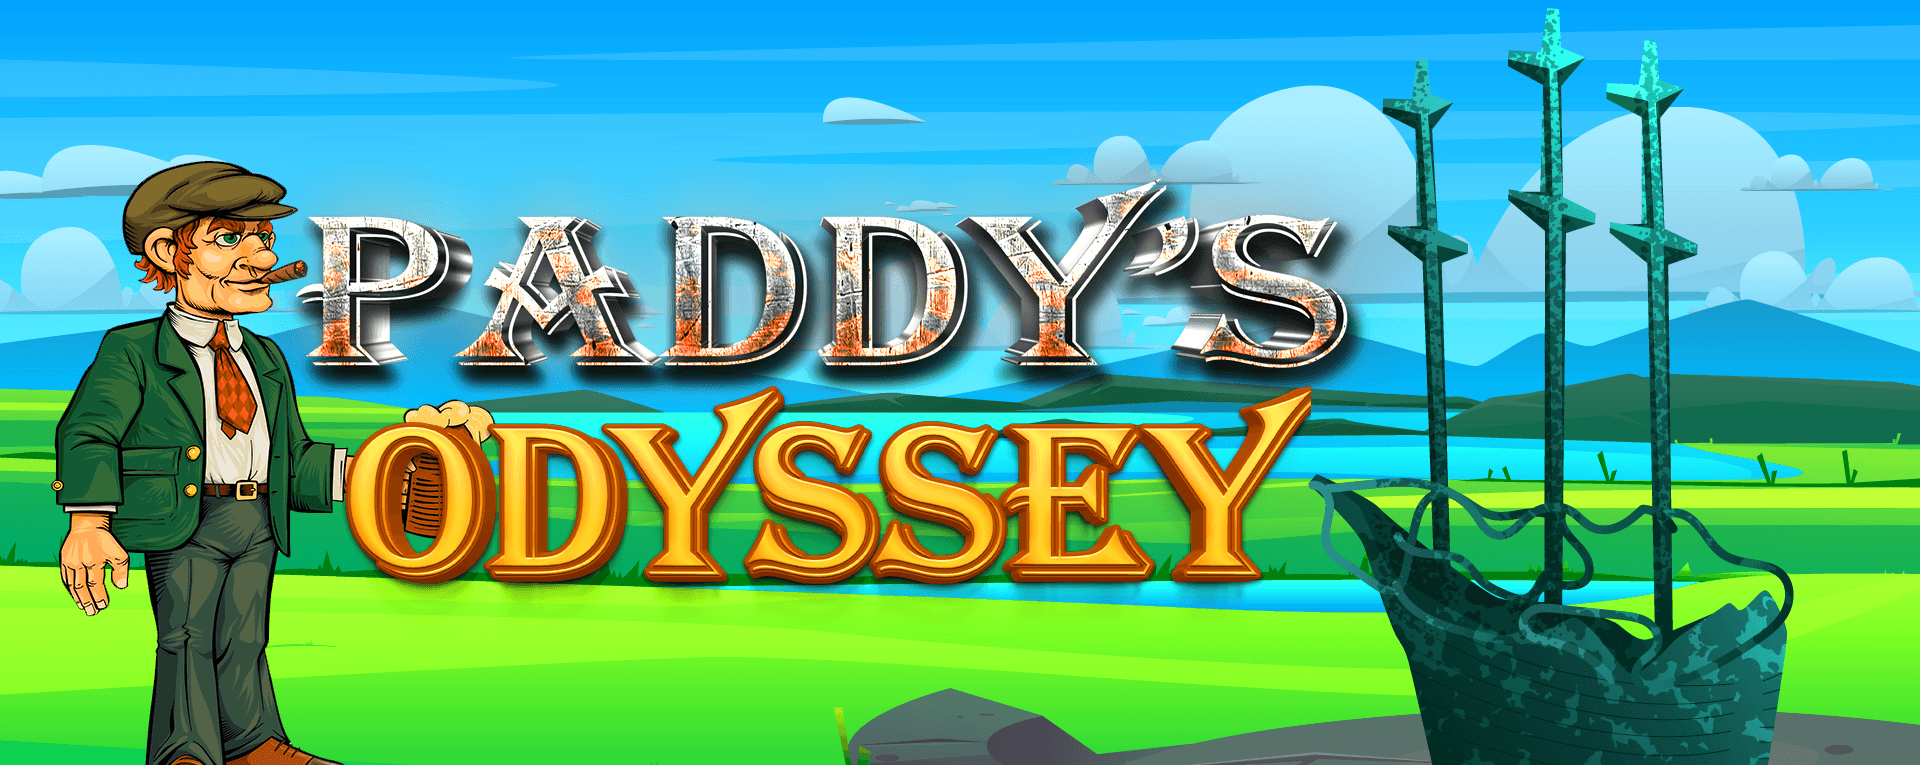 Paddys_Odyssey bannière